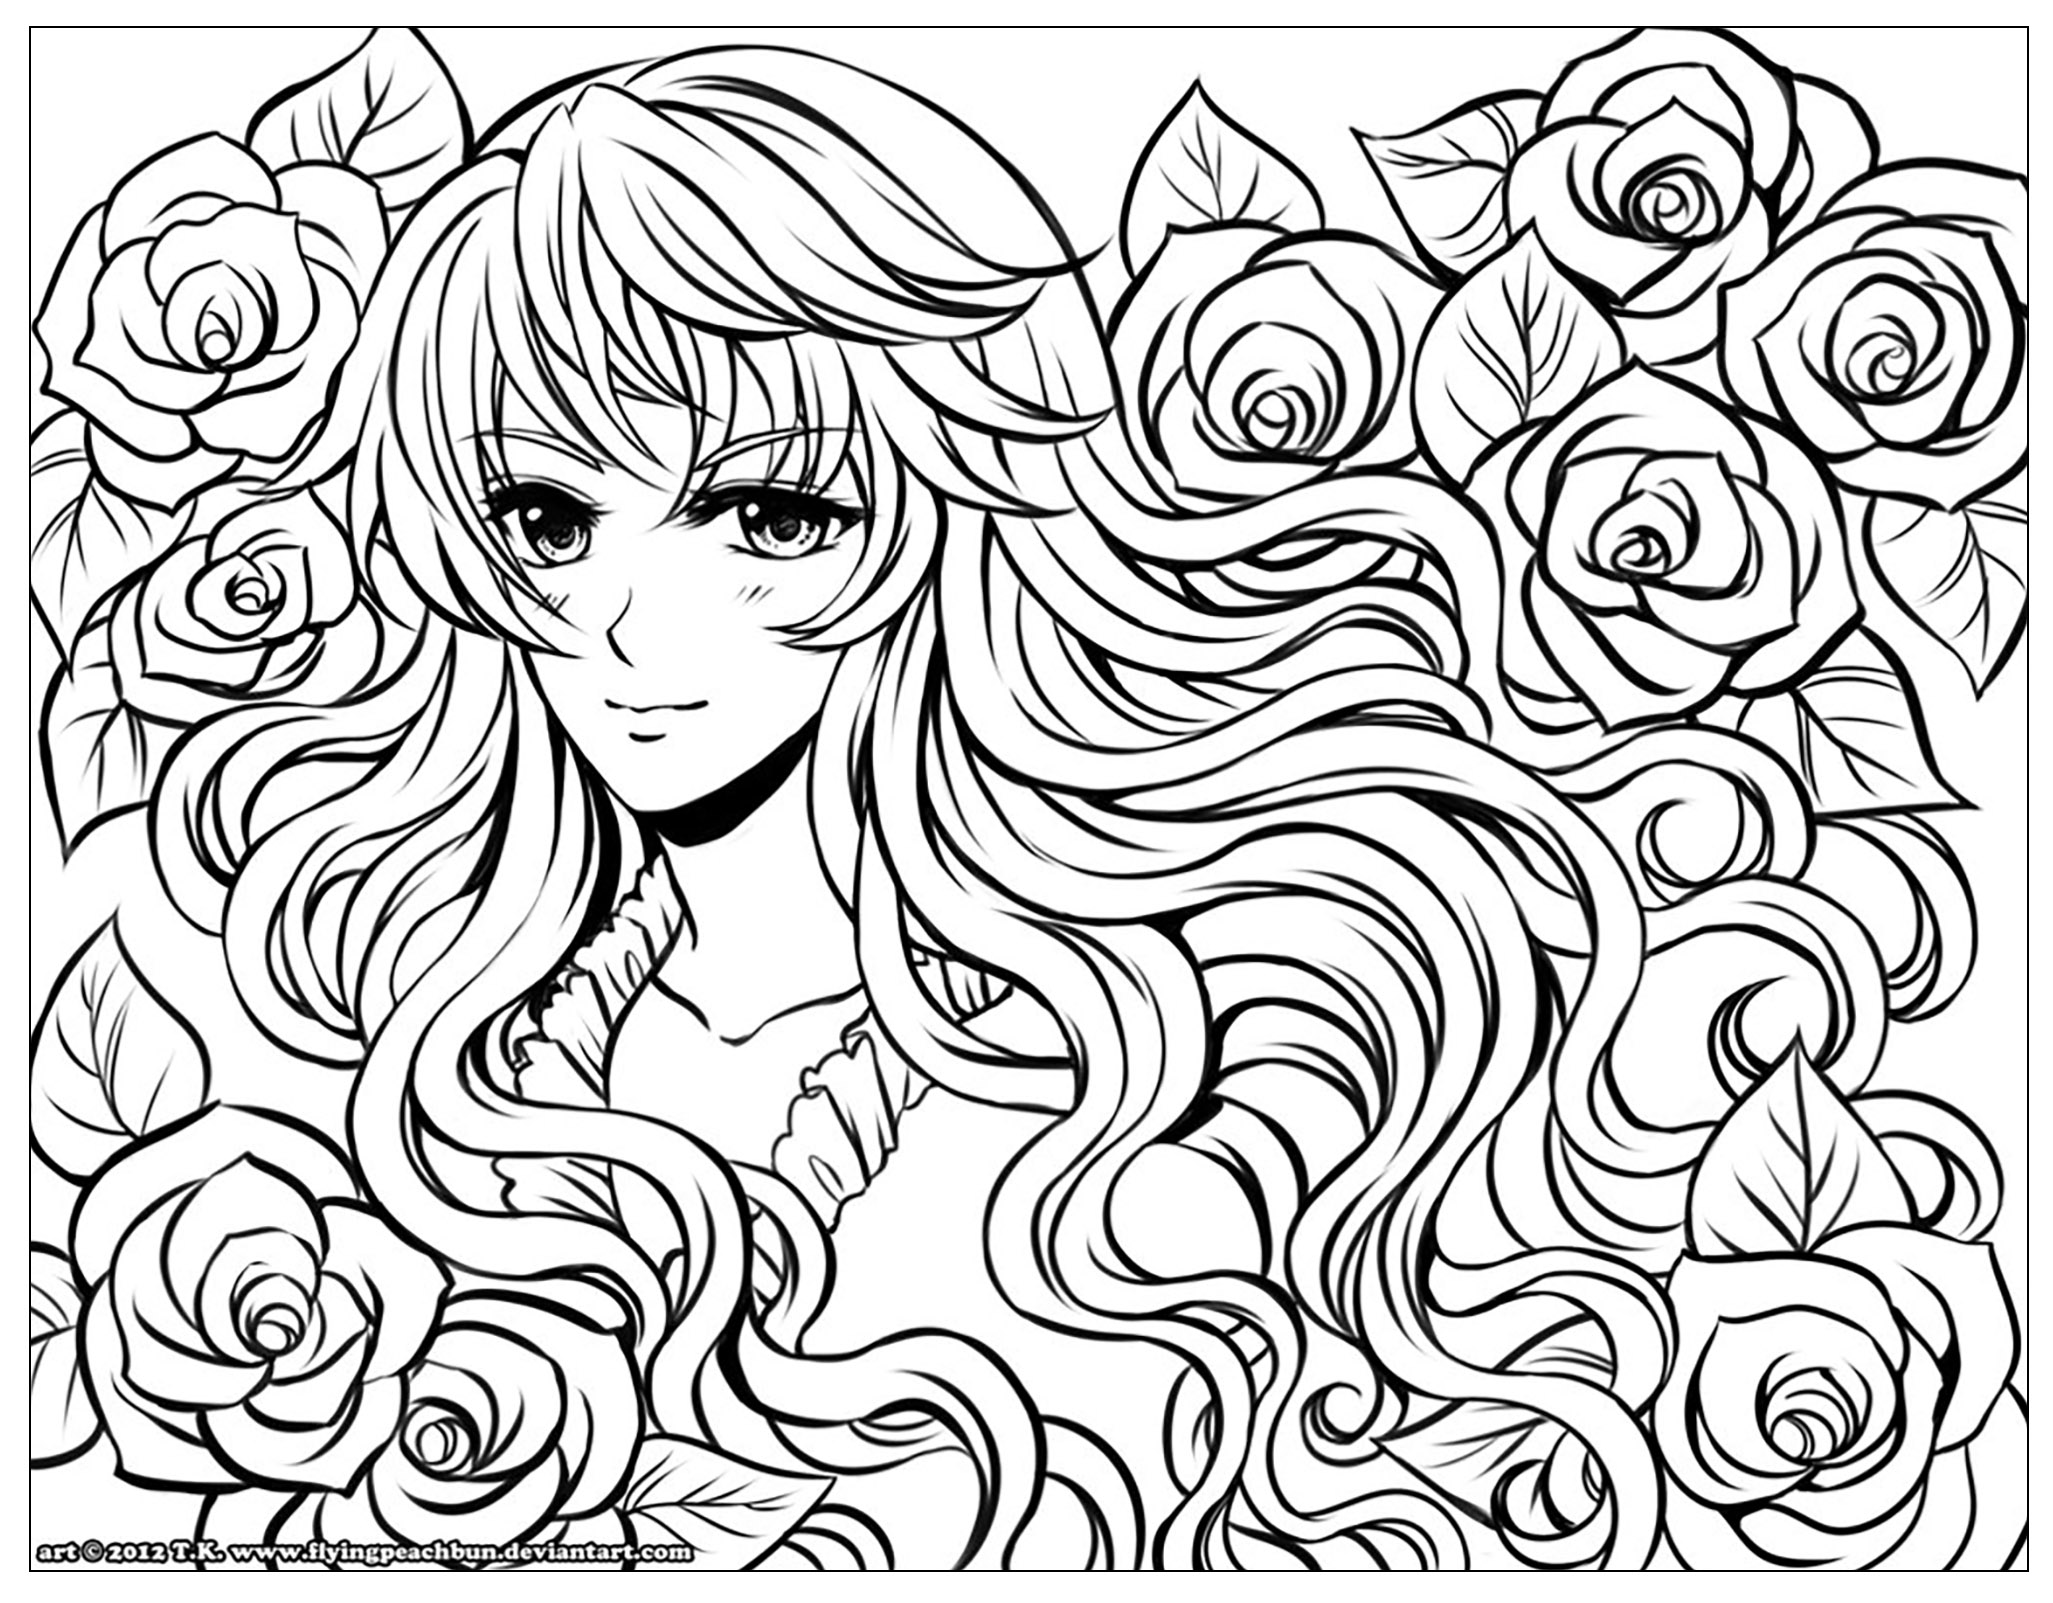 Magnifique dessin à colorier d'une filles aux cheveux en fleur